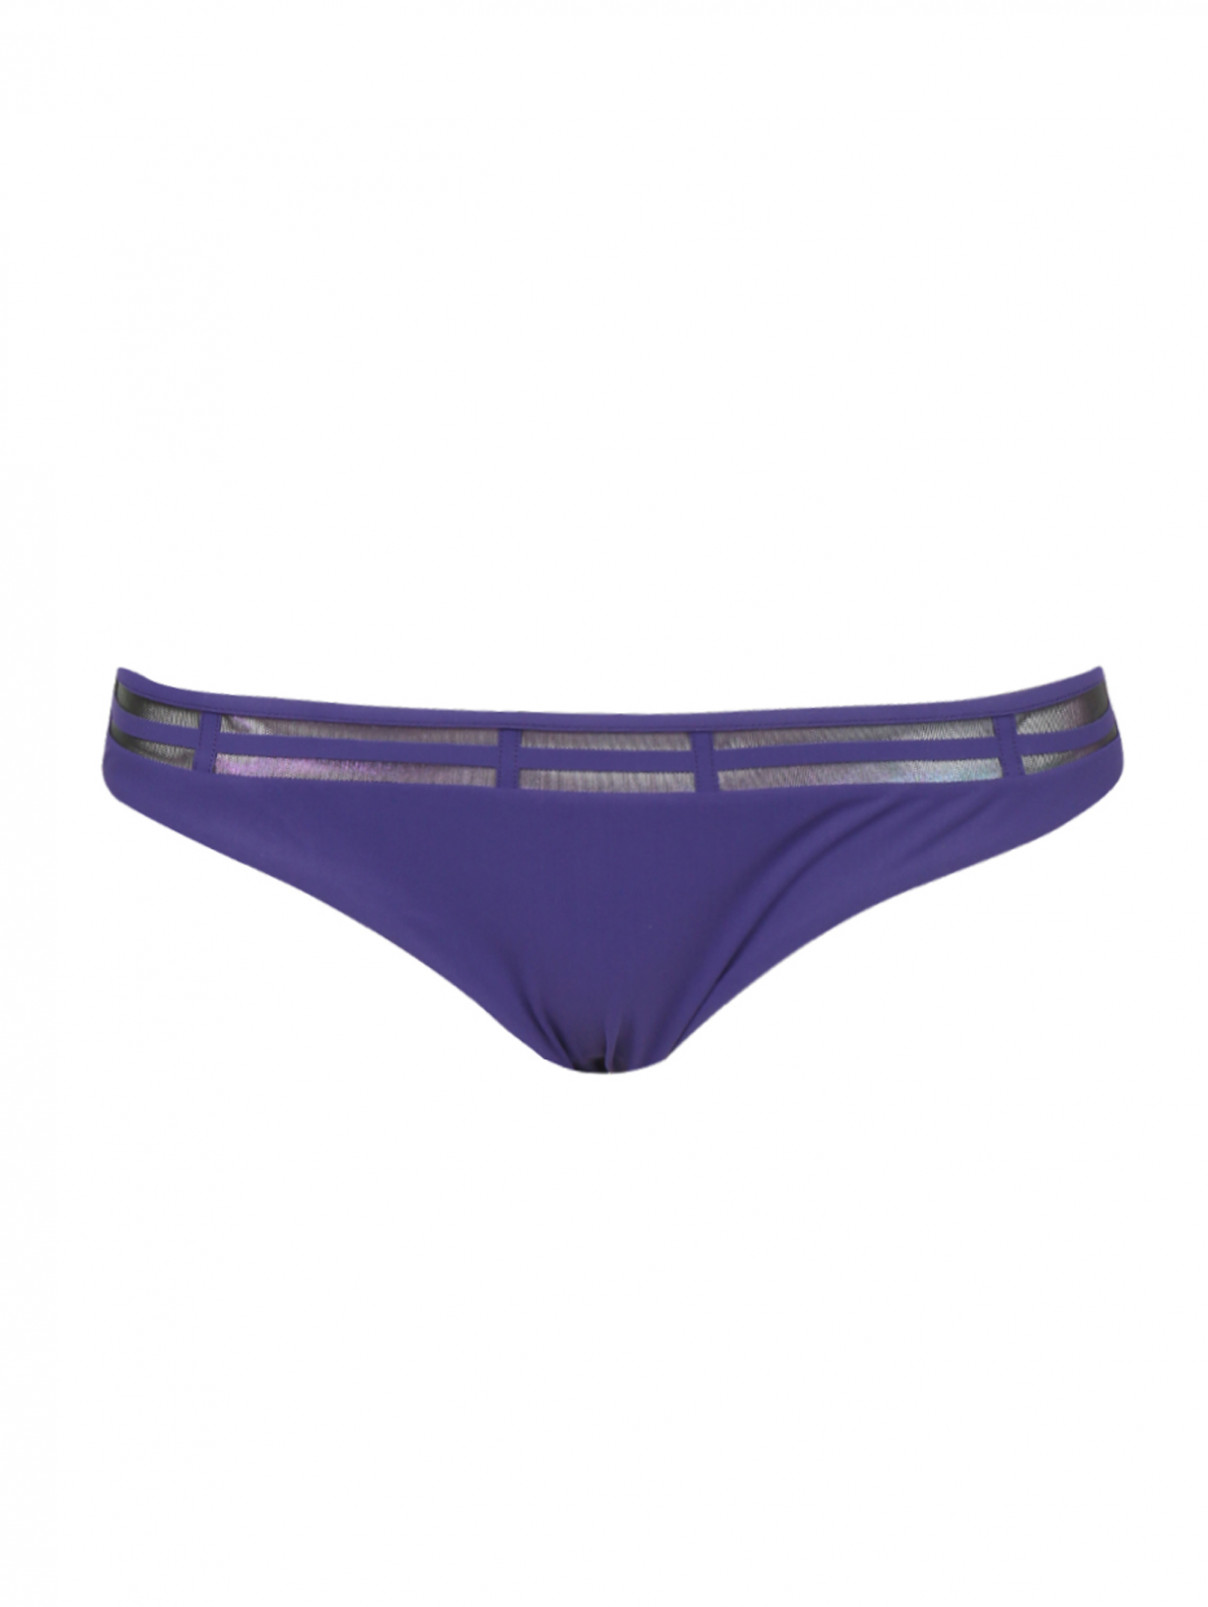 Купальник низ с вставками из сетки La Perla  –  Общий вид  – Цвет:  Фиолетовый